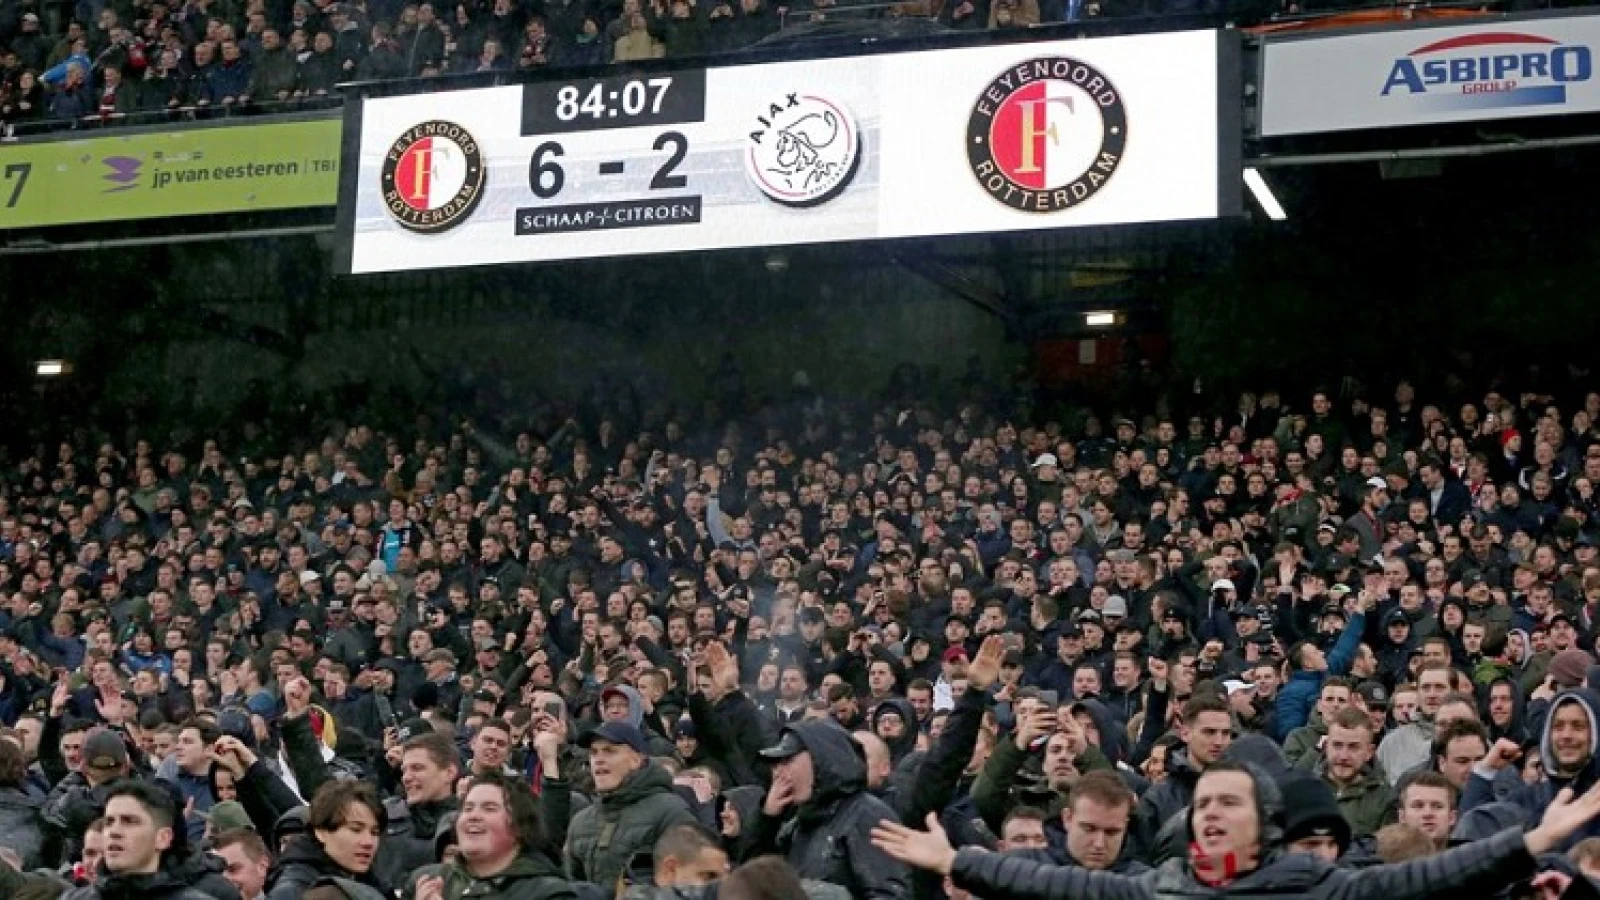 STAND | Plek twee weer in zicht na monsterzege op Ajax